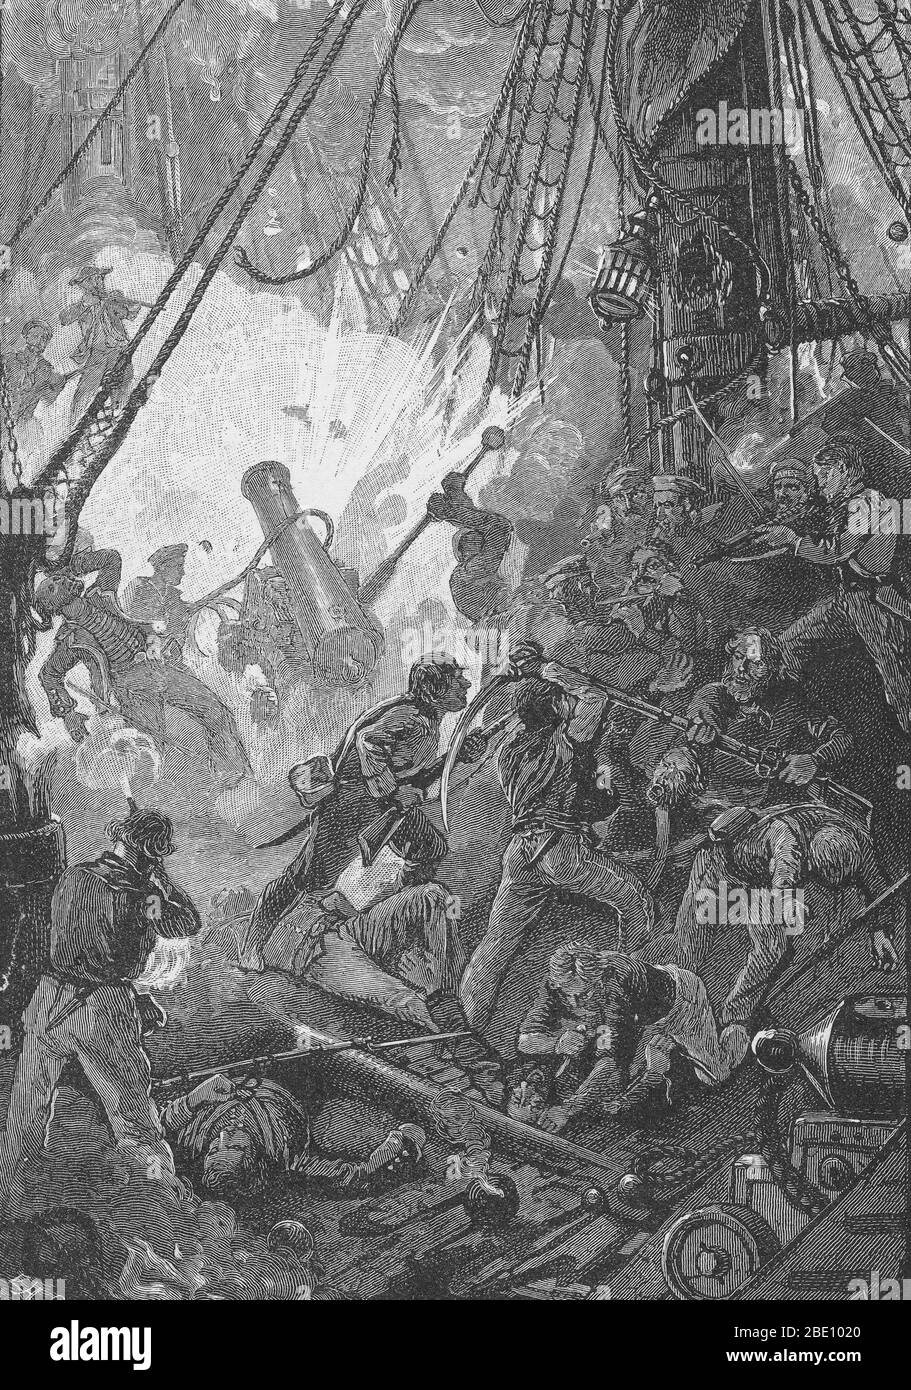 Die Mannschaften der USS Bonhomme Richard und HMS Serapis kämpfen gegen sie. Die Schlacht von Flamborough Head war eine Seeschlacht, die am 23. September 1779 in der Nordsee vor der Küste von Yorkshire stattfand und Jones' Bonhomme Richard gegen das britische Schiff Serapis anpittte. Mit ihrer größeren Manövrierbarkeit und schwereren Waffen, die Serapis Raked und schlug die Bonhomme Richard. Jones konterte, indem er die Serapis rammte und seine Crew die Schiffe mit Greifhaken zusammenbinden ließ. Die Schiffe schossen weiter ineinander, als die beiden Marinesoldaten auf gegnerische Besatzung und Offiziere schossen. Ein amerikanischer Versuch Stockfoto